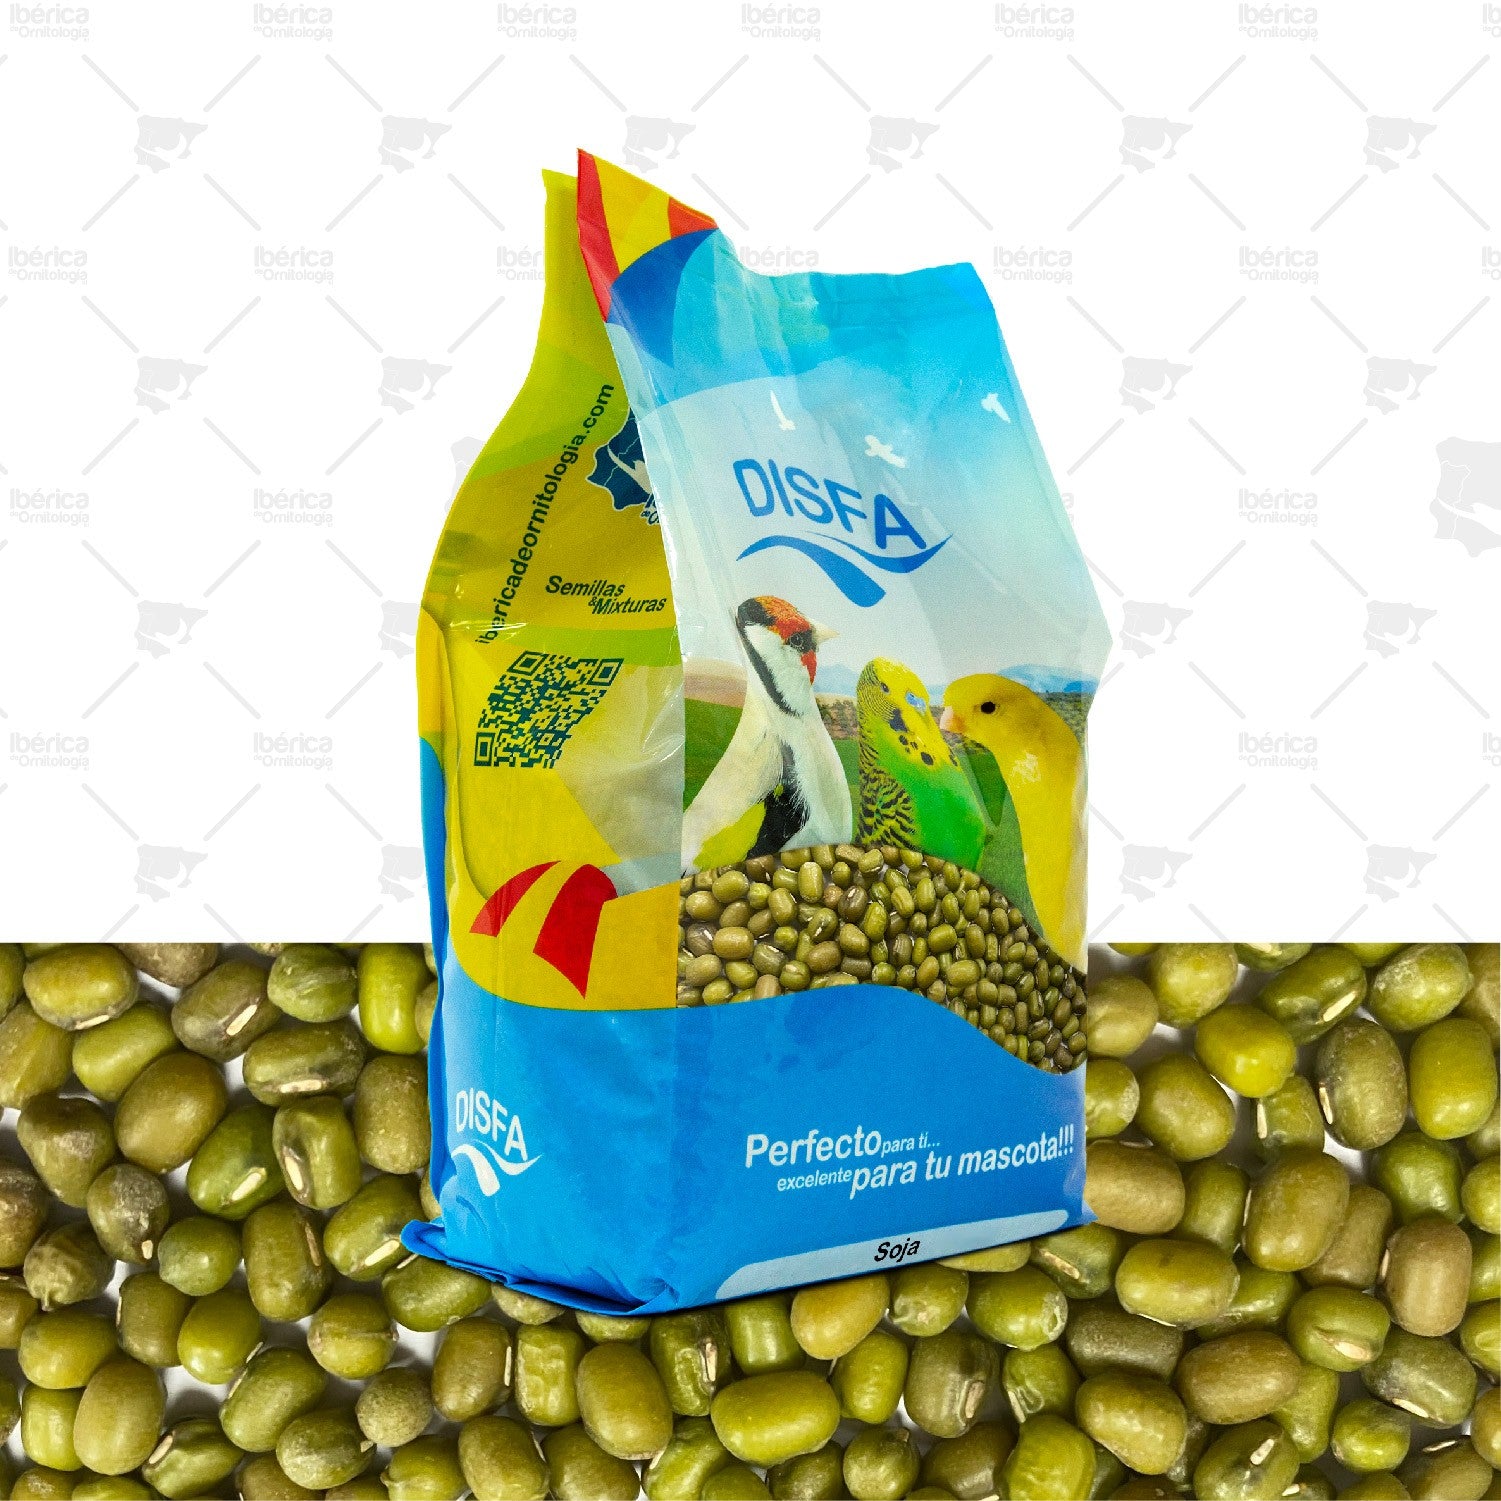 Soja Verde (Disfa), semillas de gran valor nutricional para aves, ideales para germinación ibericadeornitologia